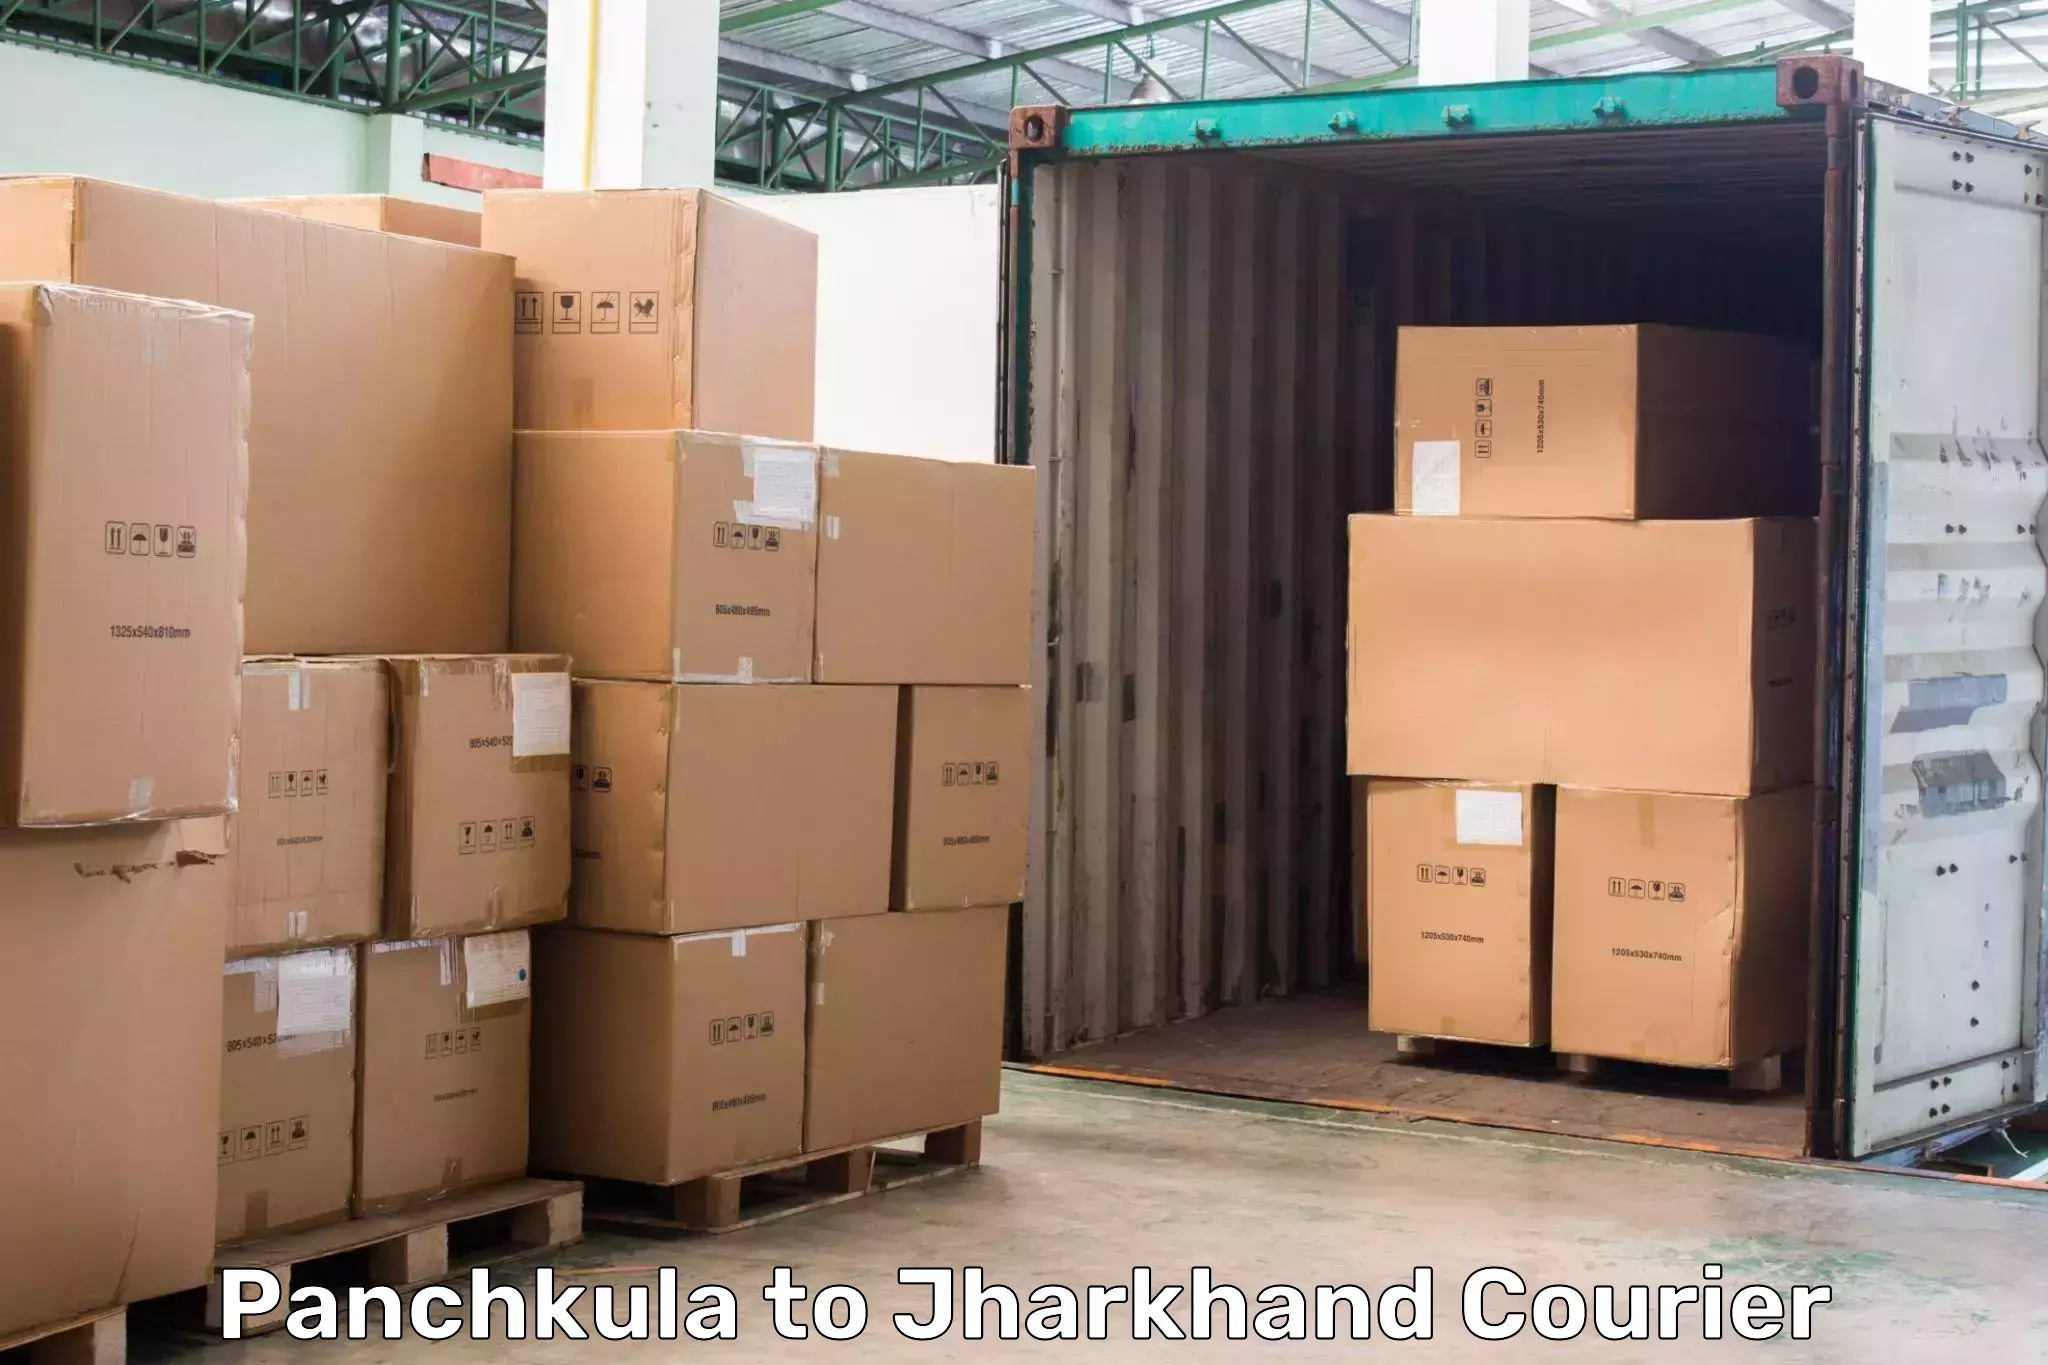 Express logistics providers Panchkula to Jharkhand